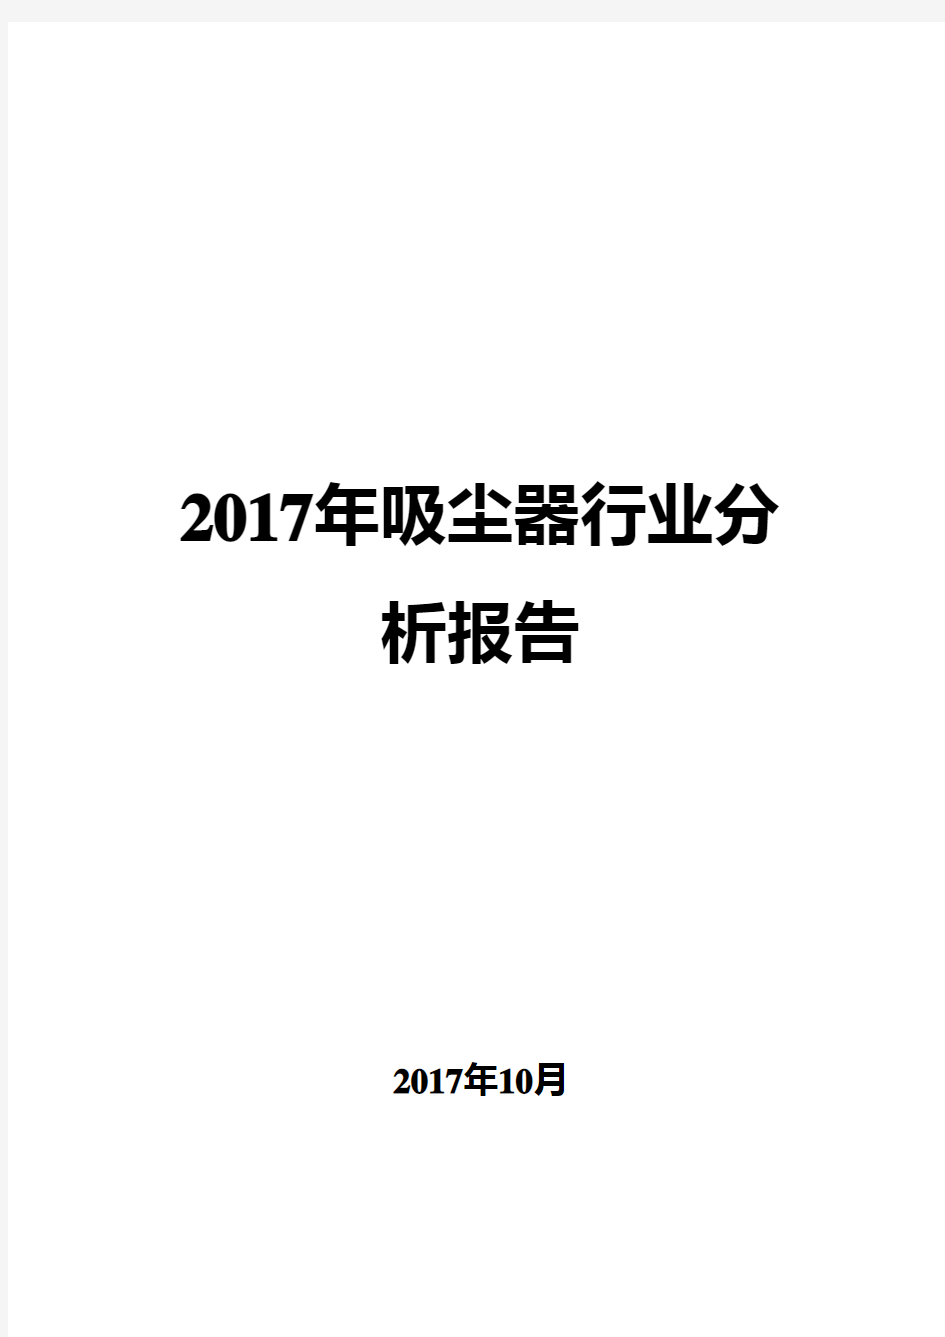 2017年吸尘器行业分析报告